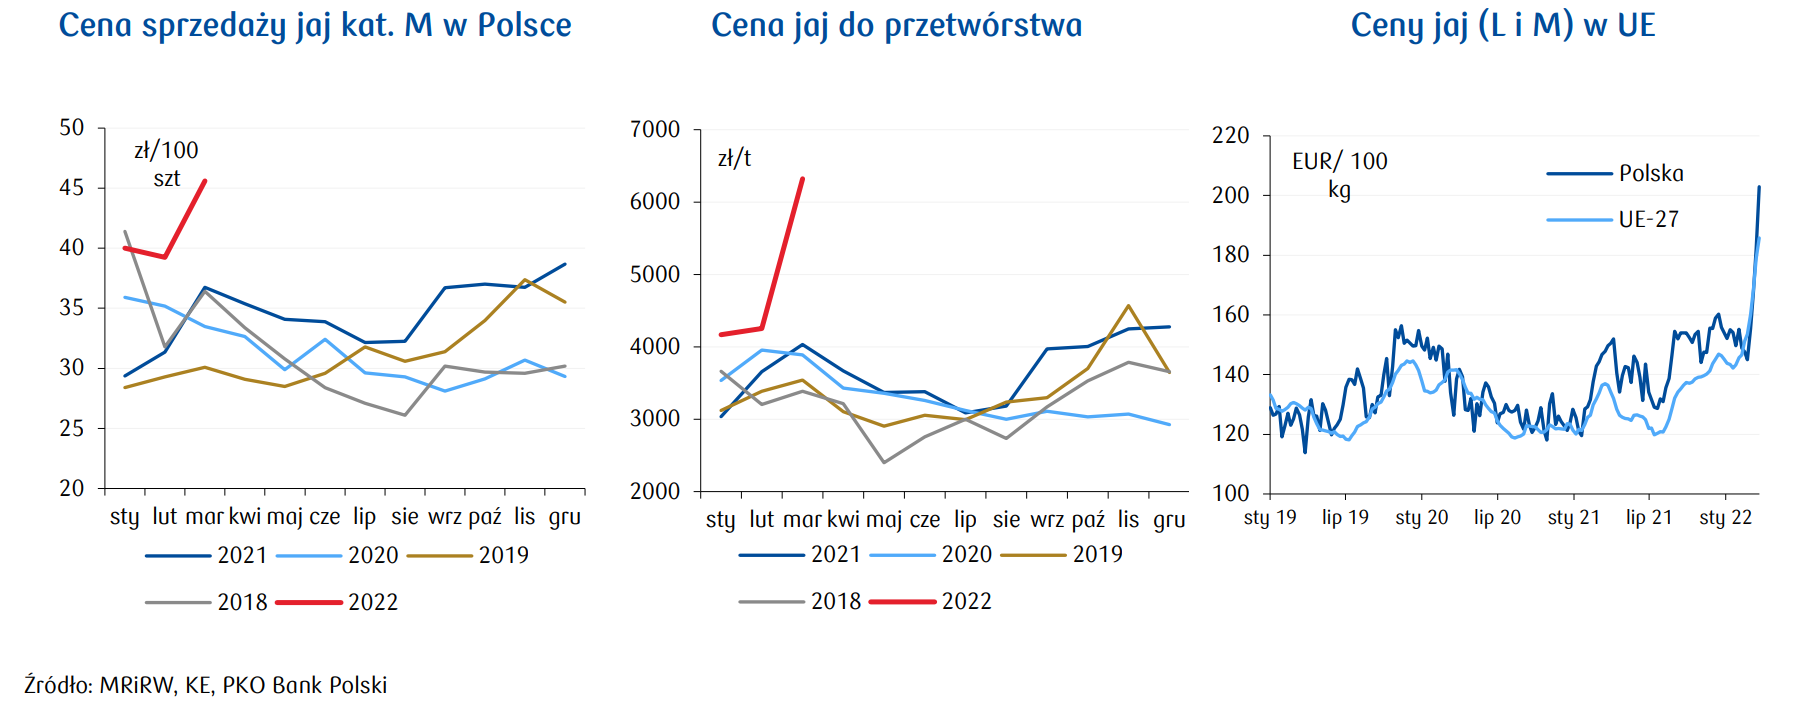 Ceny jaj w Polsce i UE